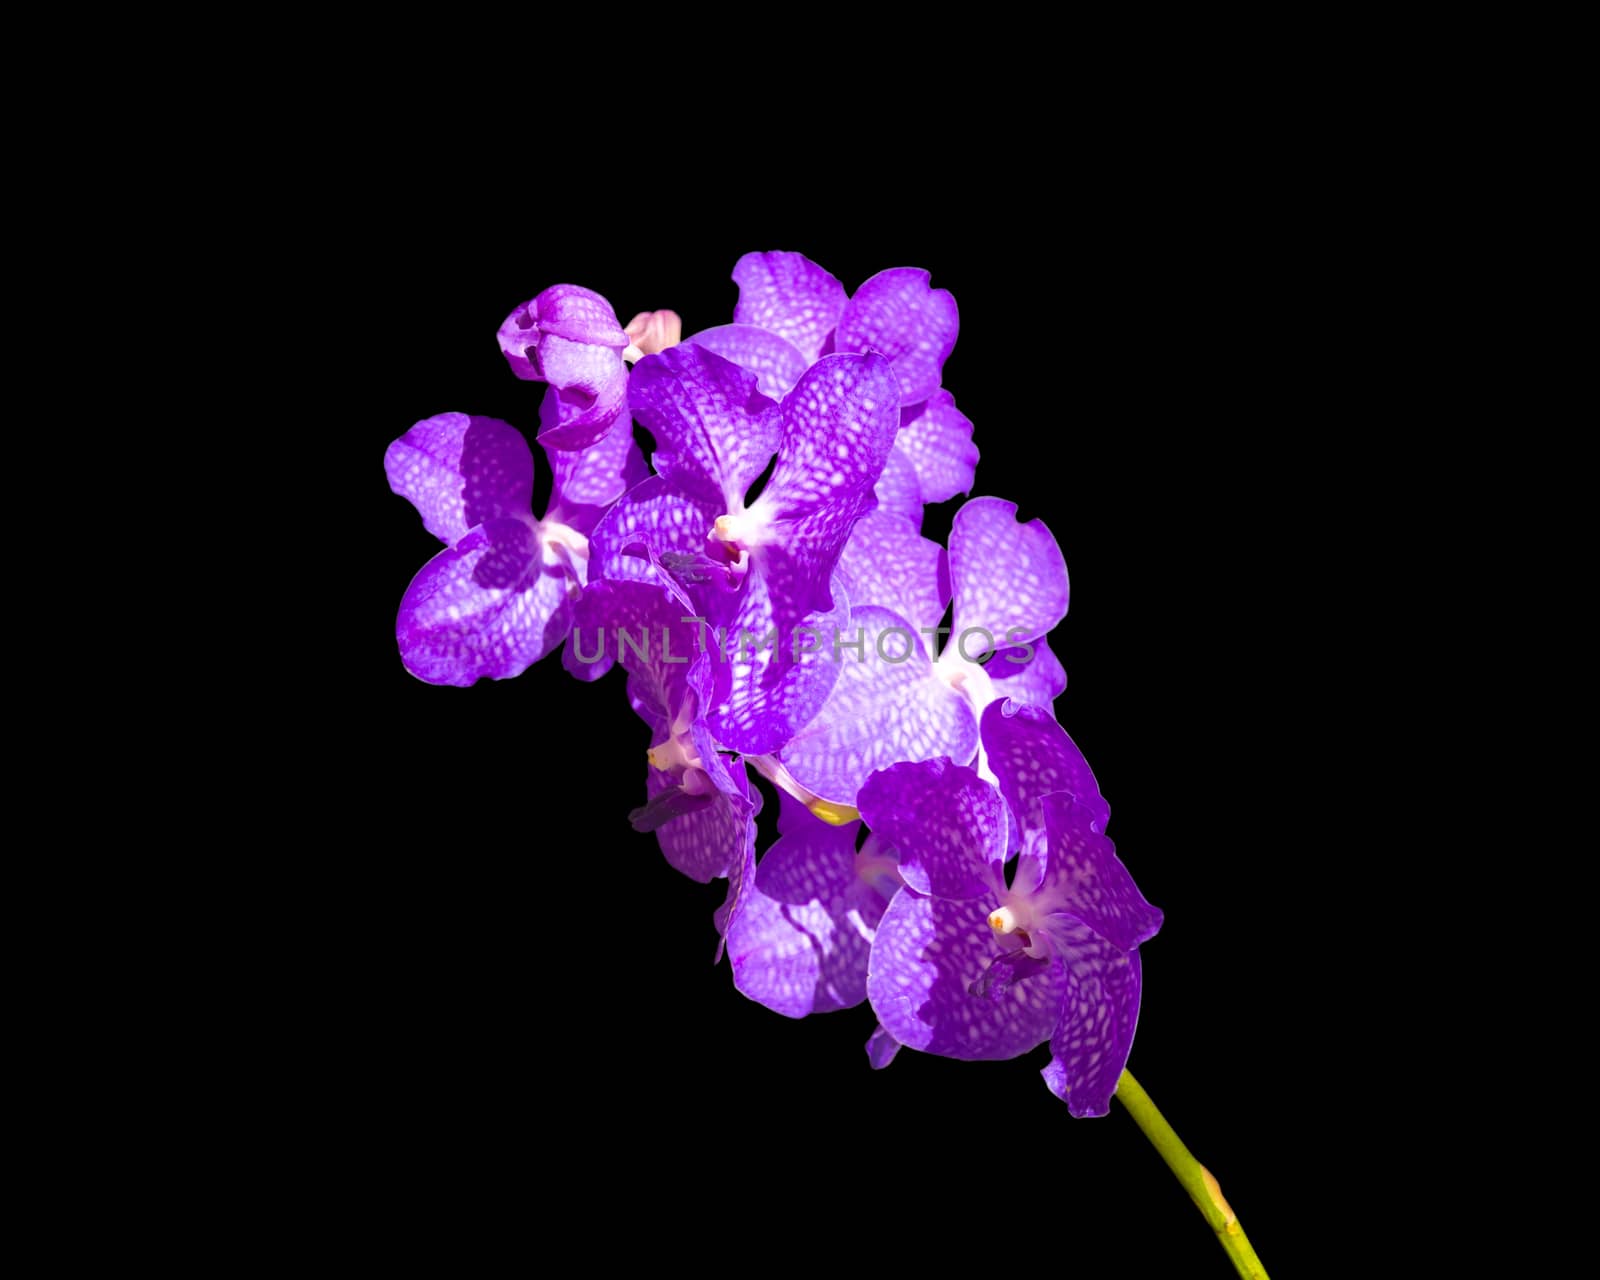 Blue Vanda coerulea Orchid, isolated on black